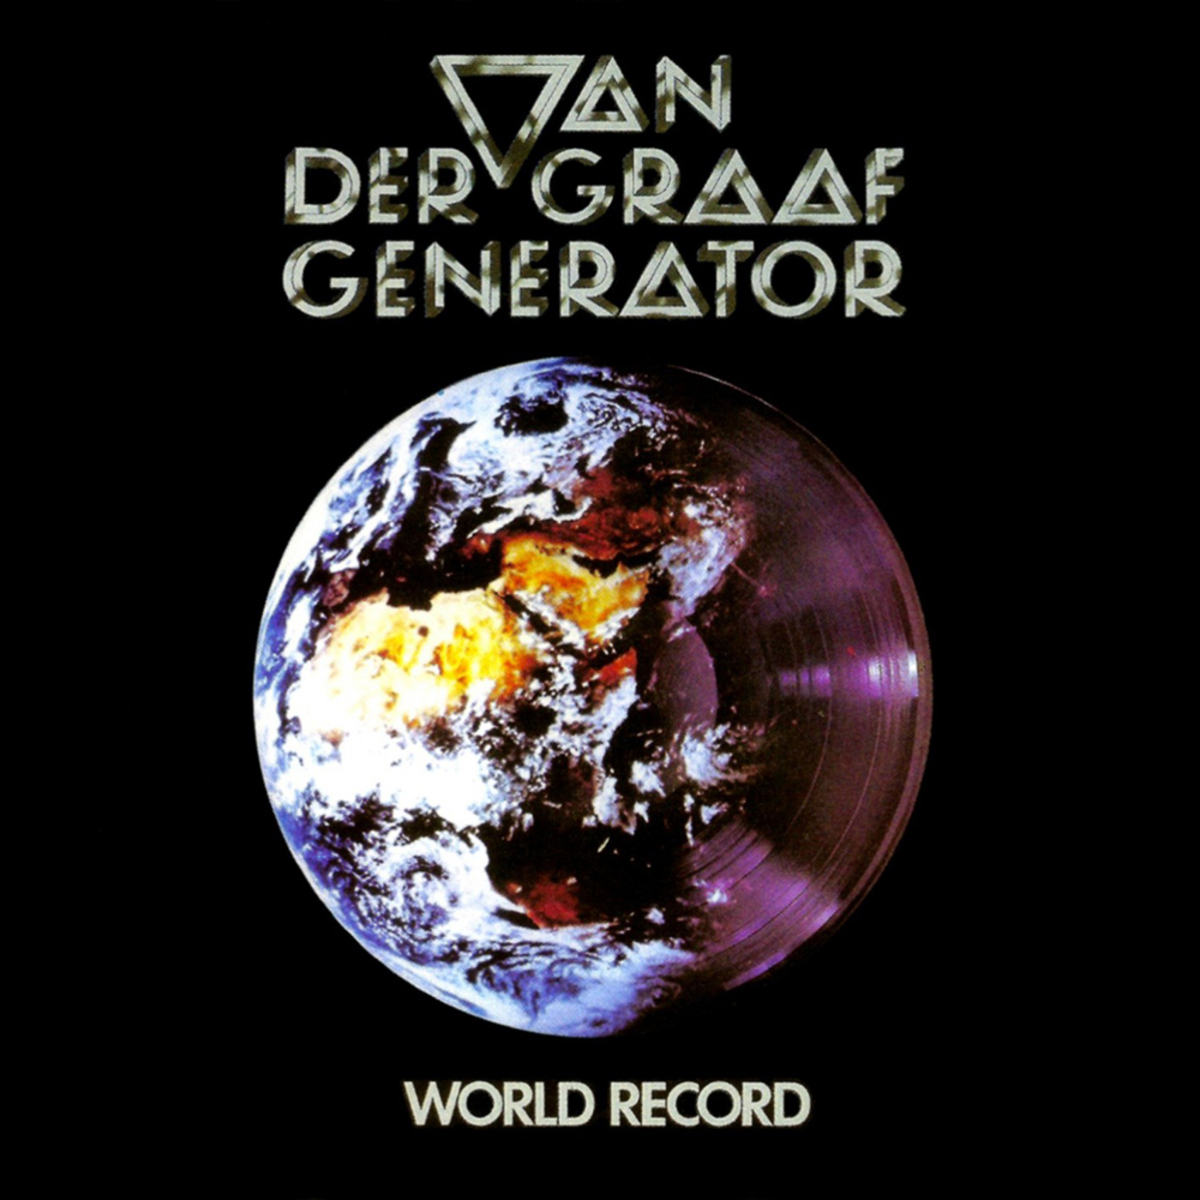 Van-der-graaf-generator-album-cover-world